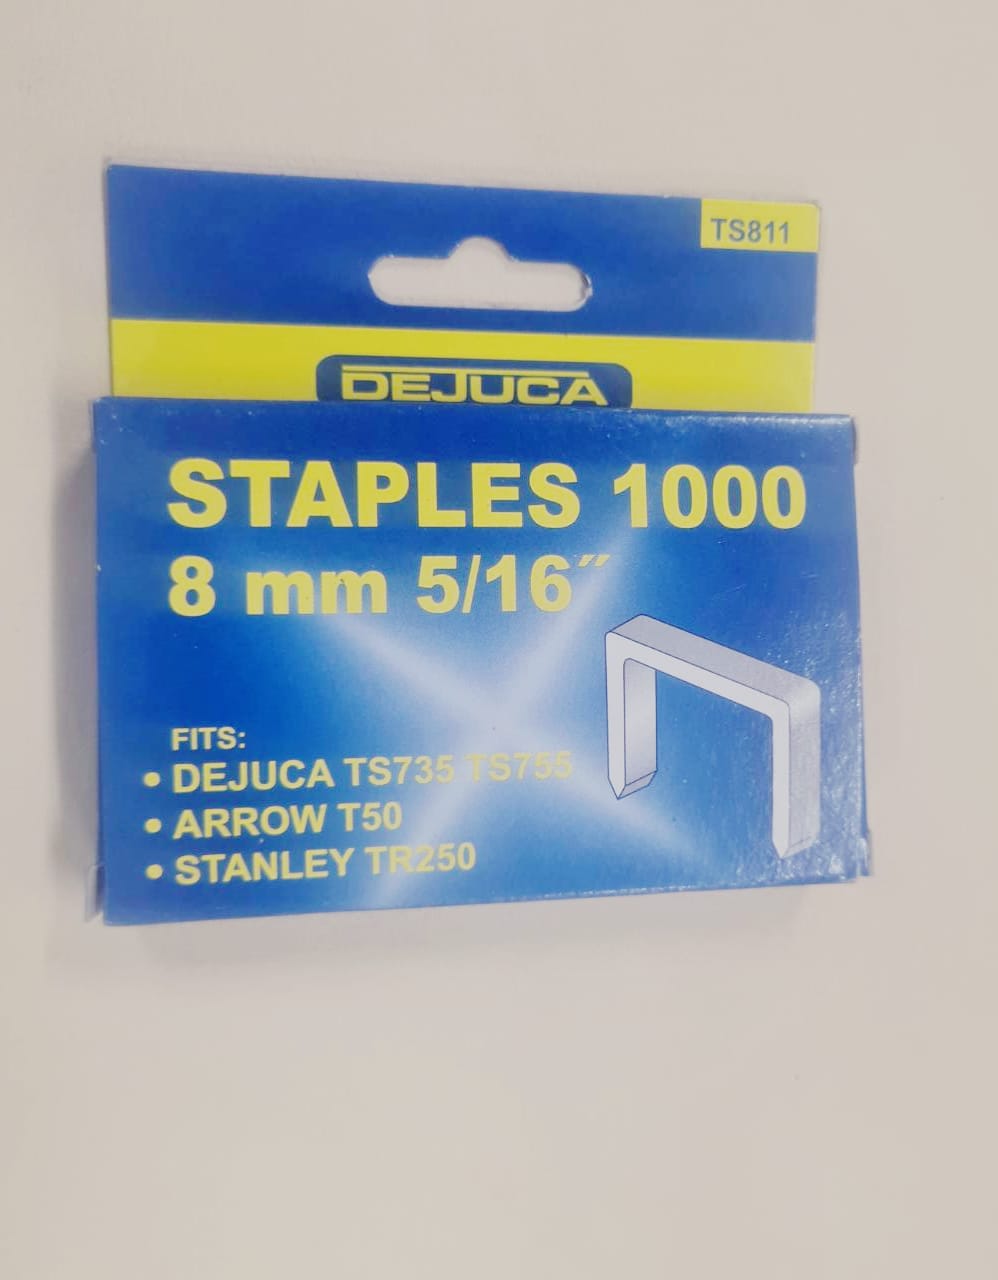 Staples 1000  8mm 5/16" DeJuca TS811 (1000pcs)